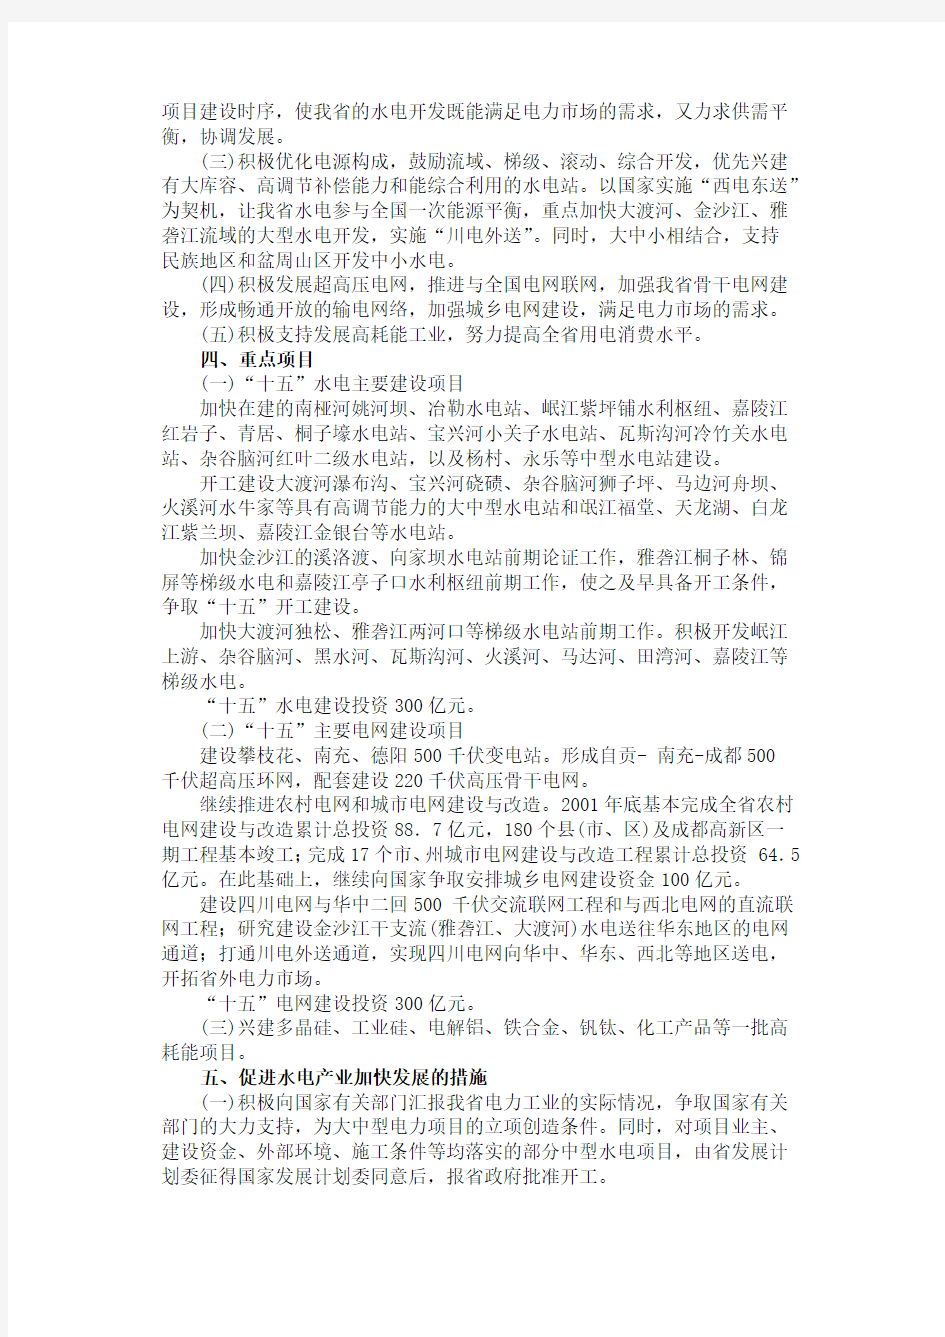 中共四川省委关于加快水电支柱产业发展的意见